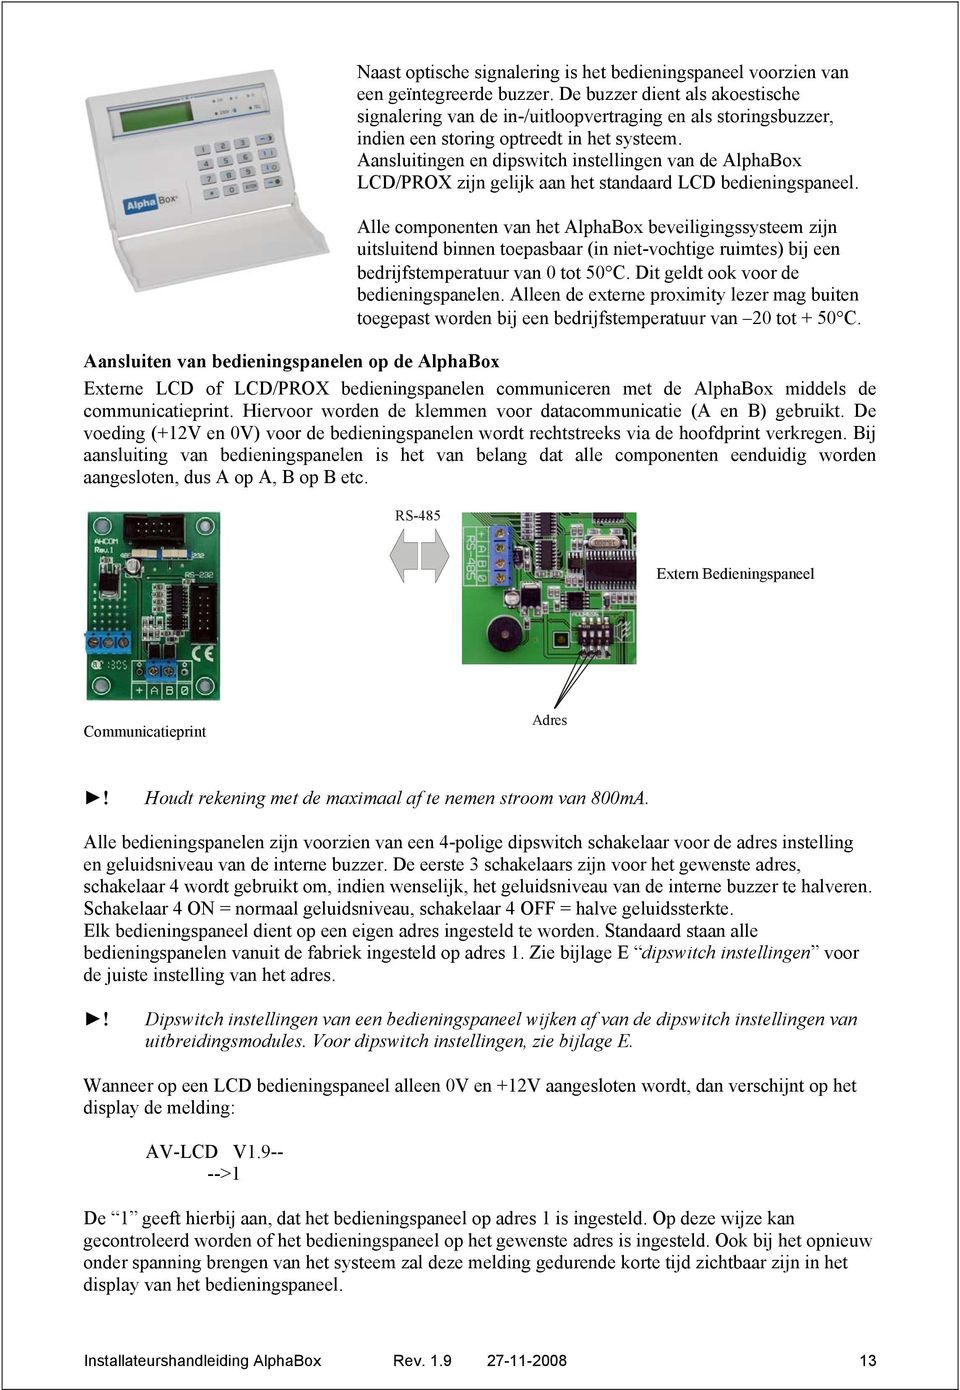 Aansluitingen en dipswitch instellingen van de AlphaBox LCD/PROX zijn gelijk aan het standaard LCD bedieningspaneel.